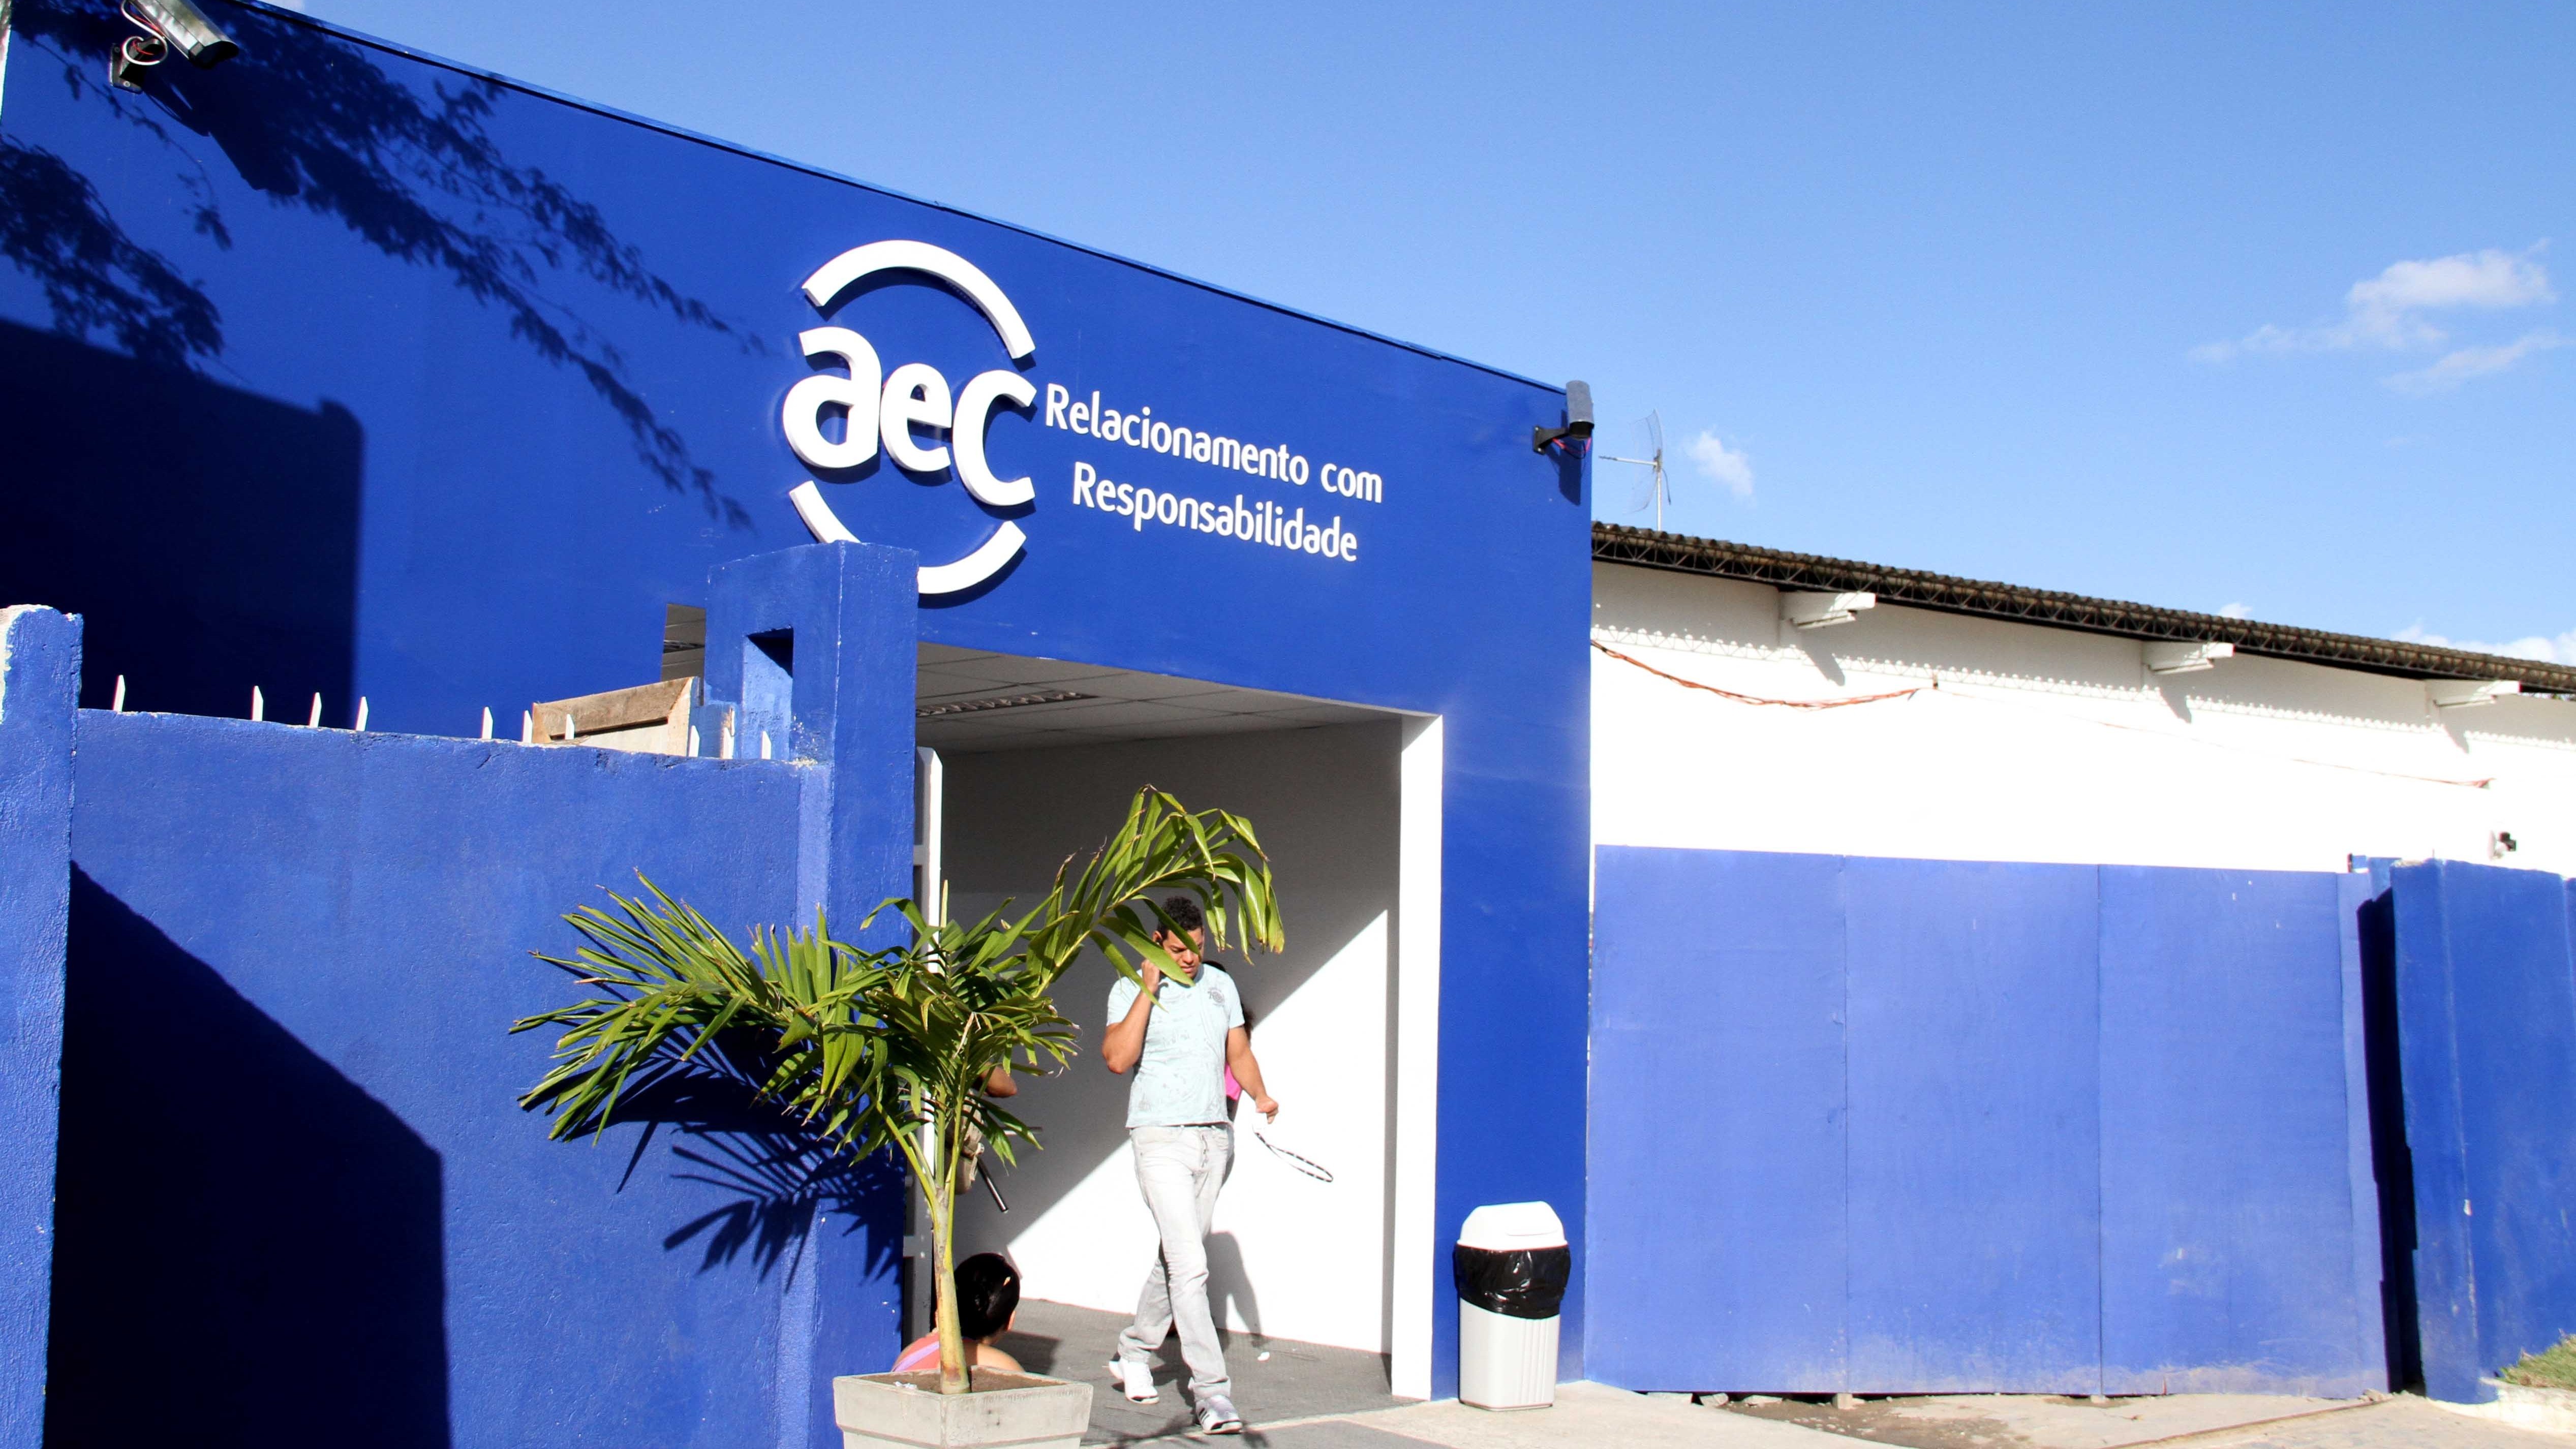 Empresa de telemarketing abre 600 vagas de emprego, em Campina Grande